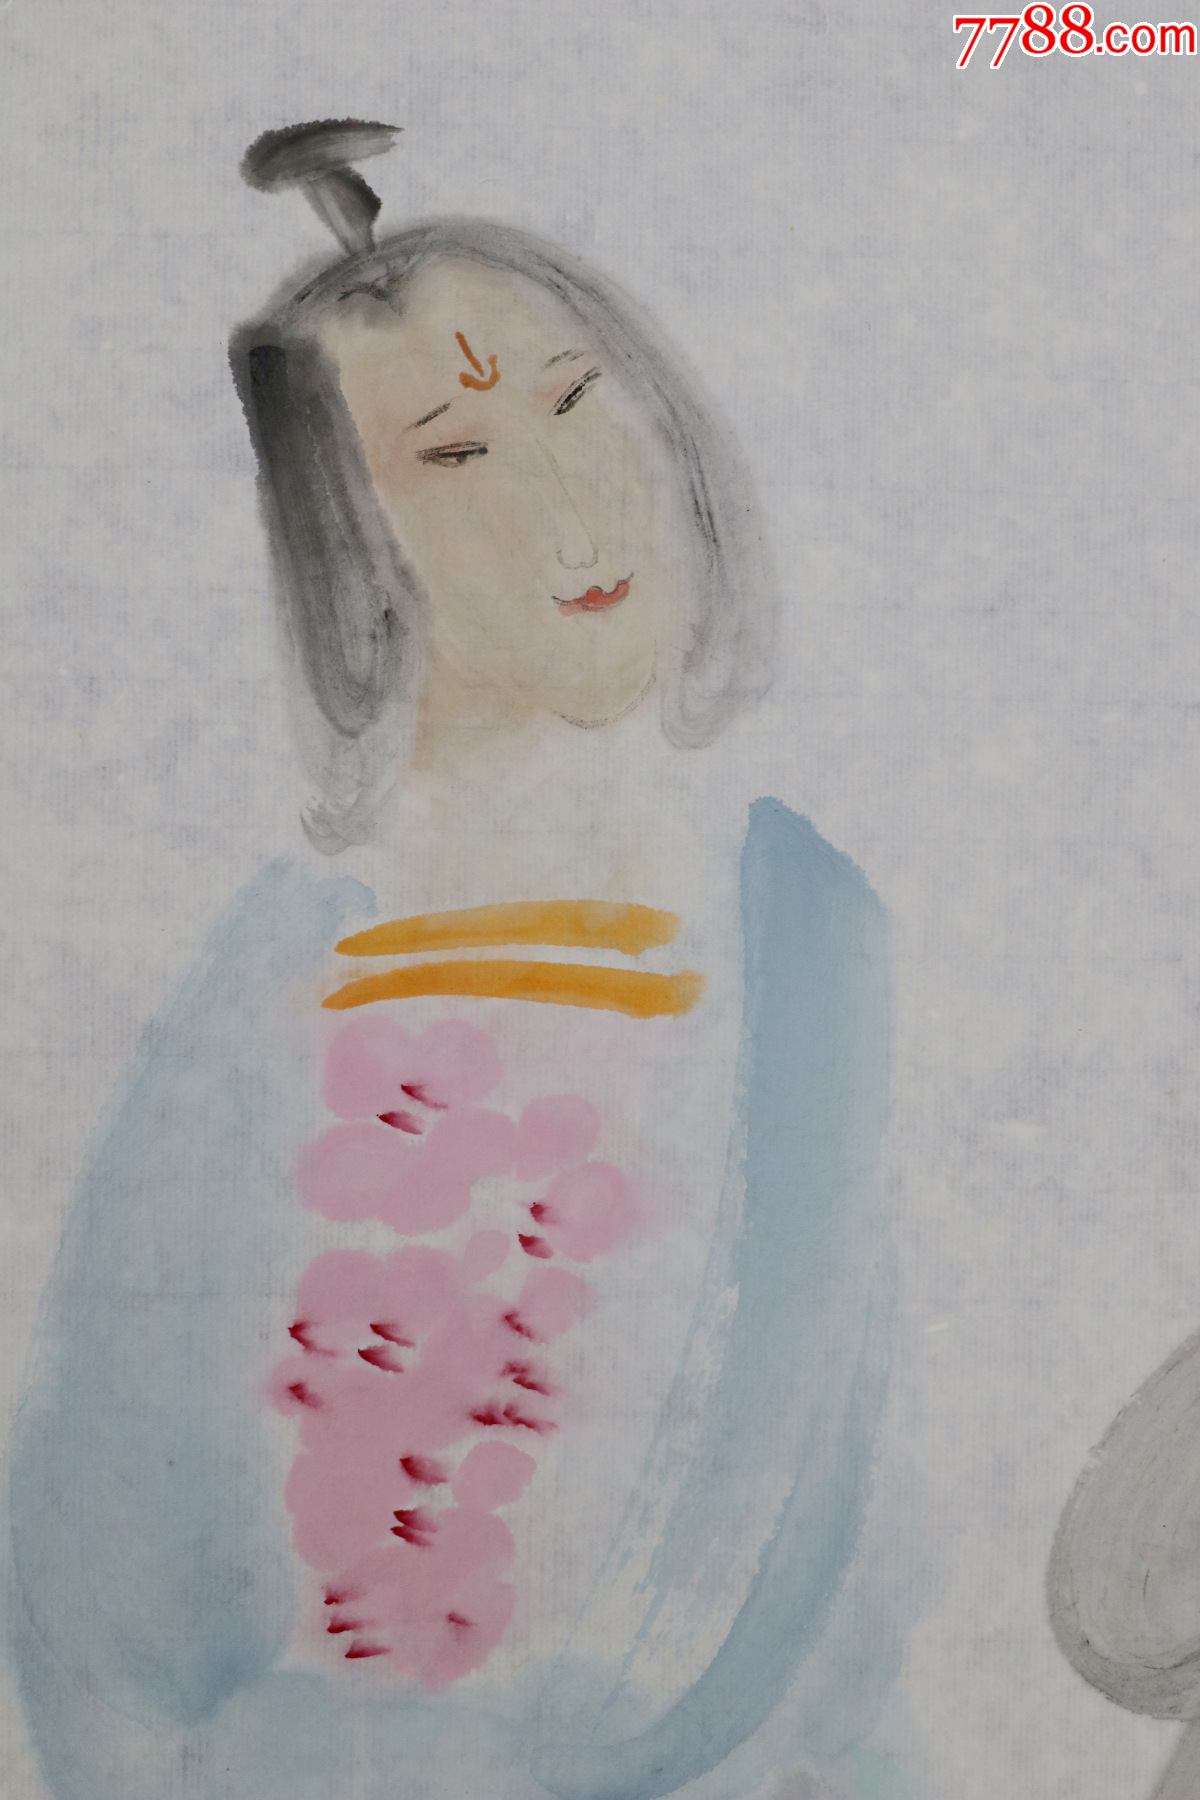 姜也吉林长春人师承于著名画家李世南范曾周韶华中国美术家协会会员